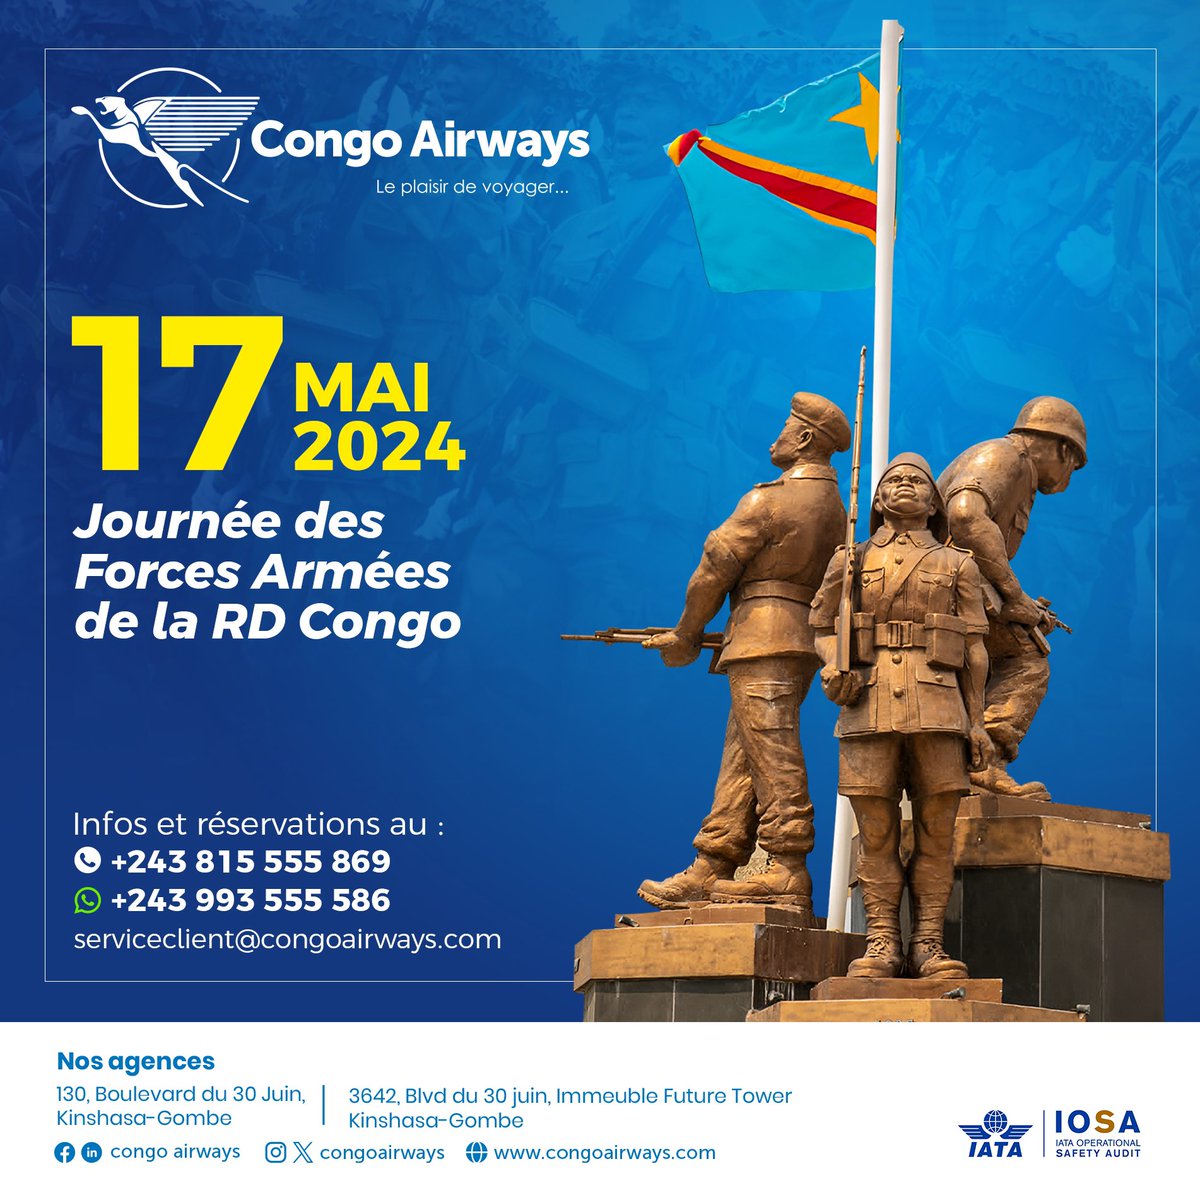 En cette journée dédiée aux Forces Armées Congolaises, Congo Airways exprime sa reconnaissance envers nos vaillants soldats.

Congo Airways, le plaisir de voyager!
#17mai2024 #LePlaisirDeVoyager #aviation #Kinshasa_RDC #FORCESARMEES #hommage